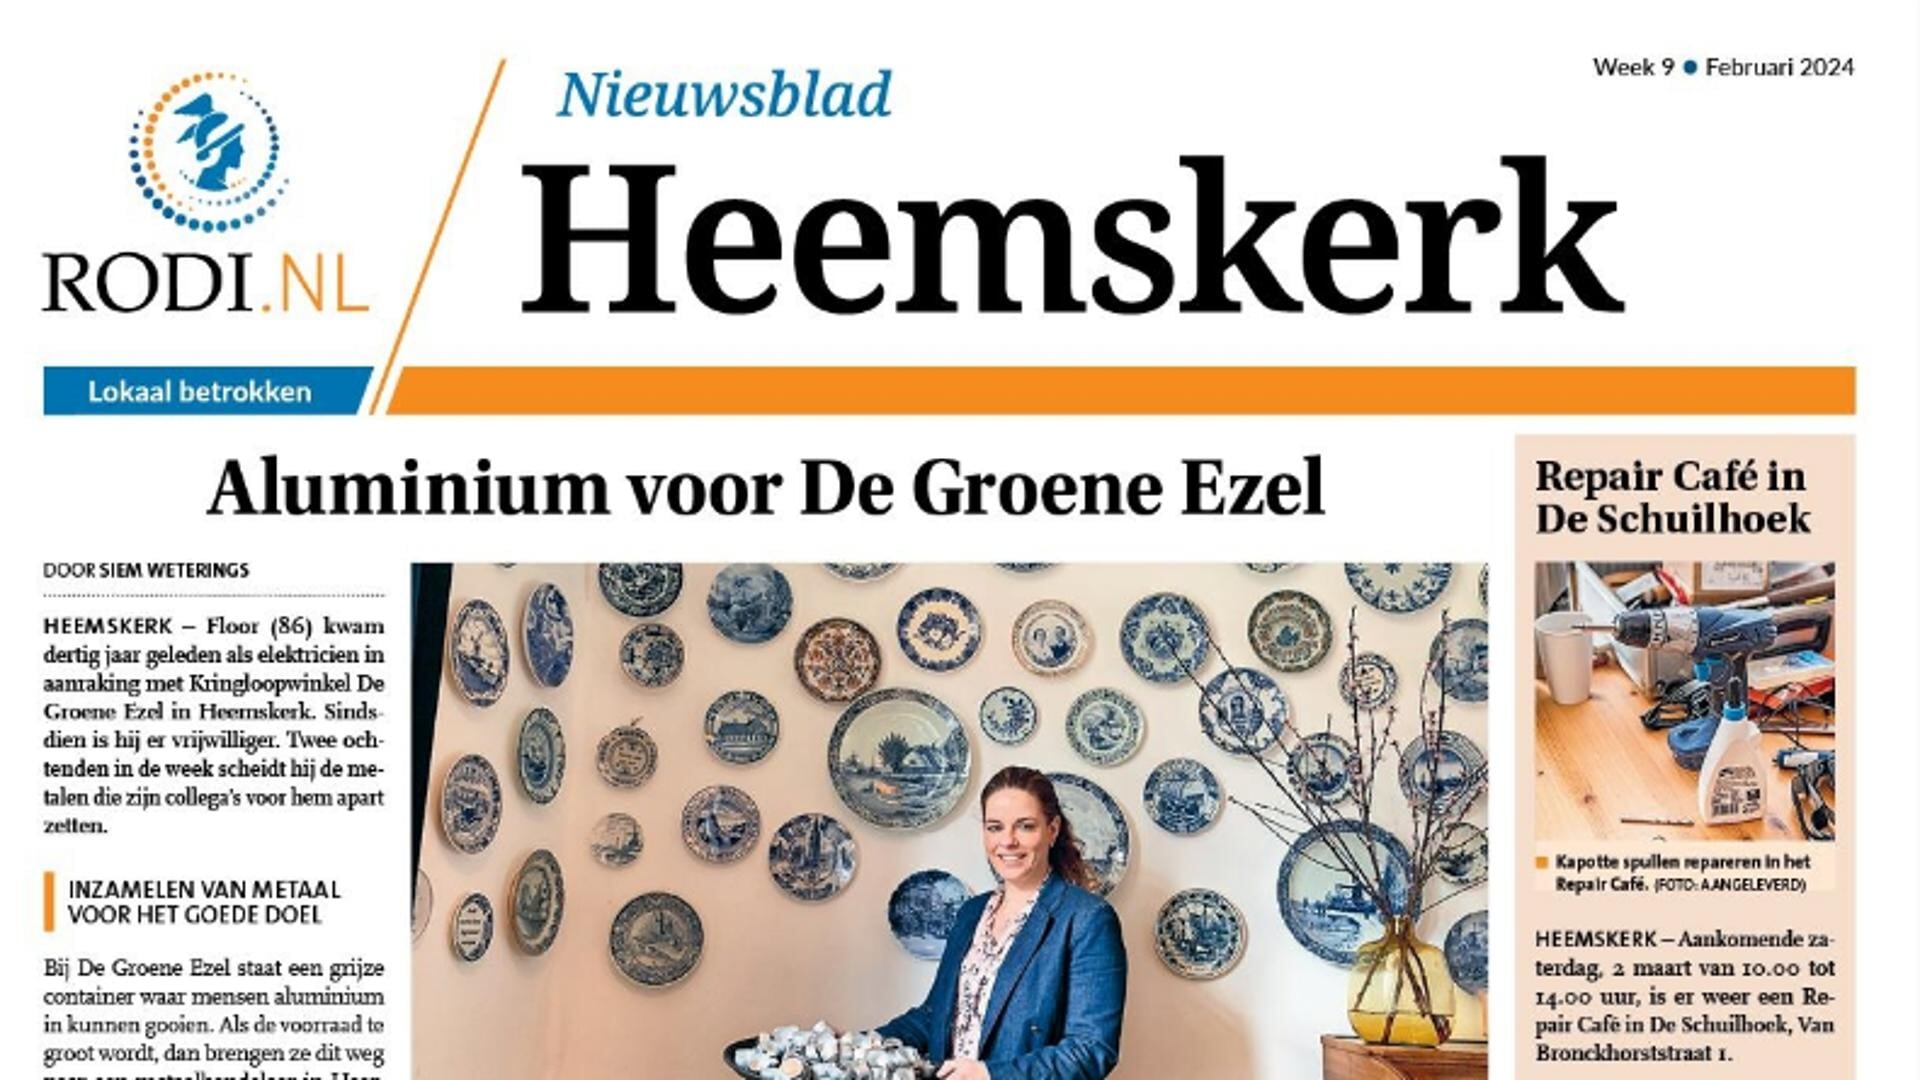 Nieuwsblad Heemskerk staat weer online!